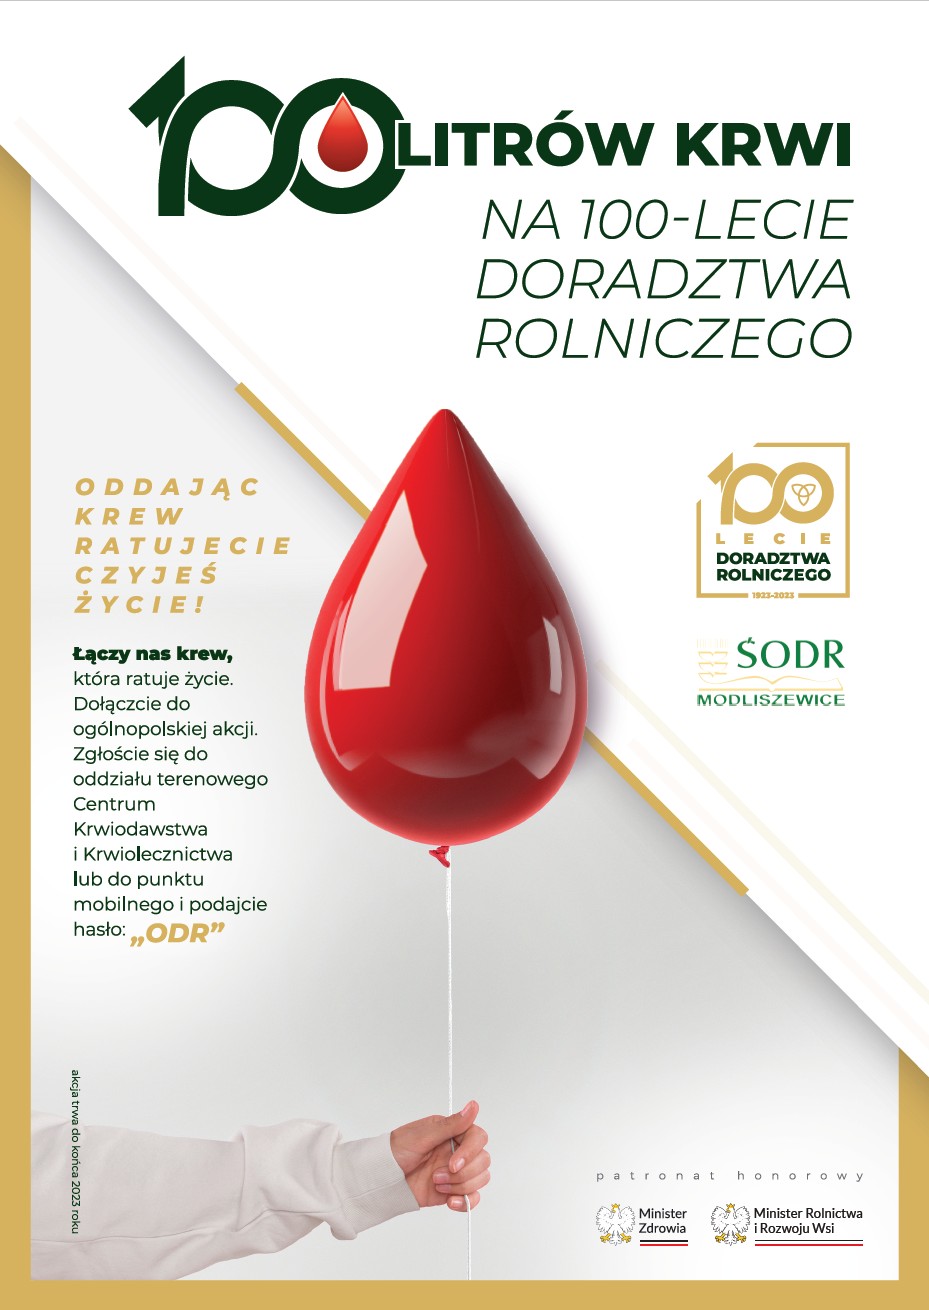 !00 litrów krwi na 100-lecie doradztwa rolniczego w Polsce